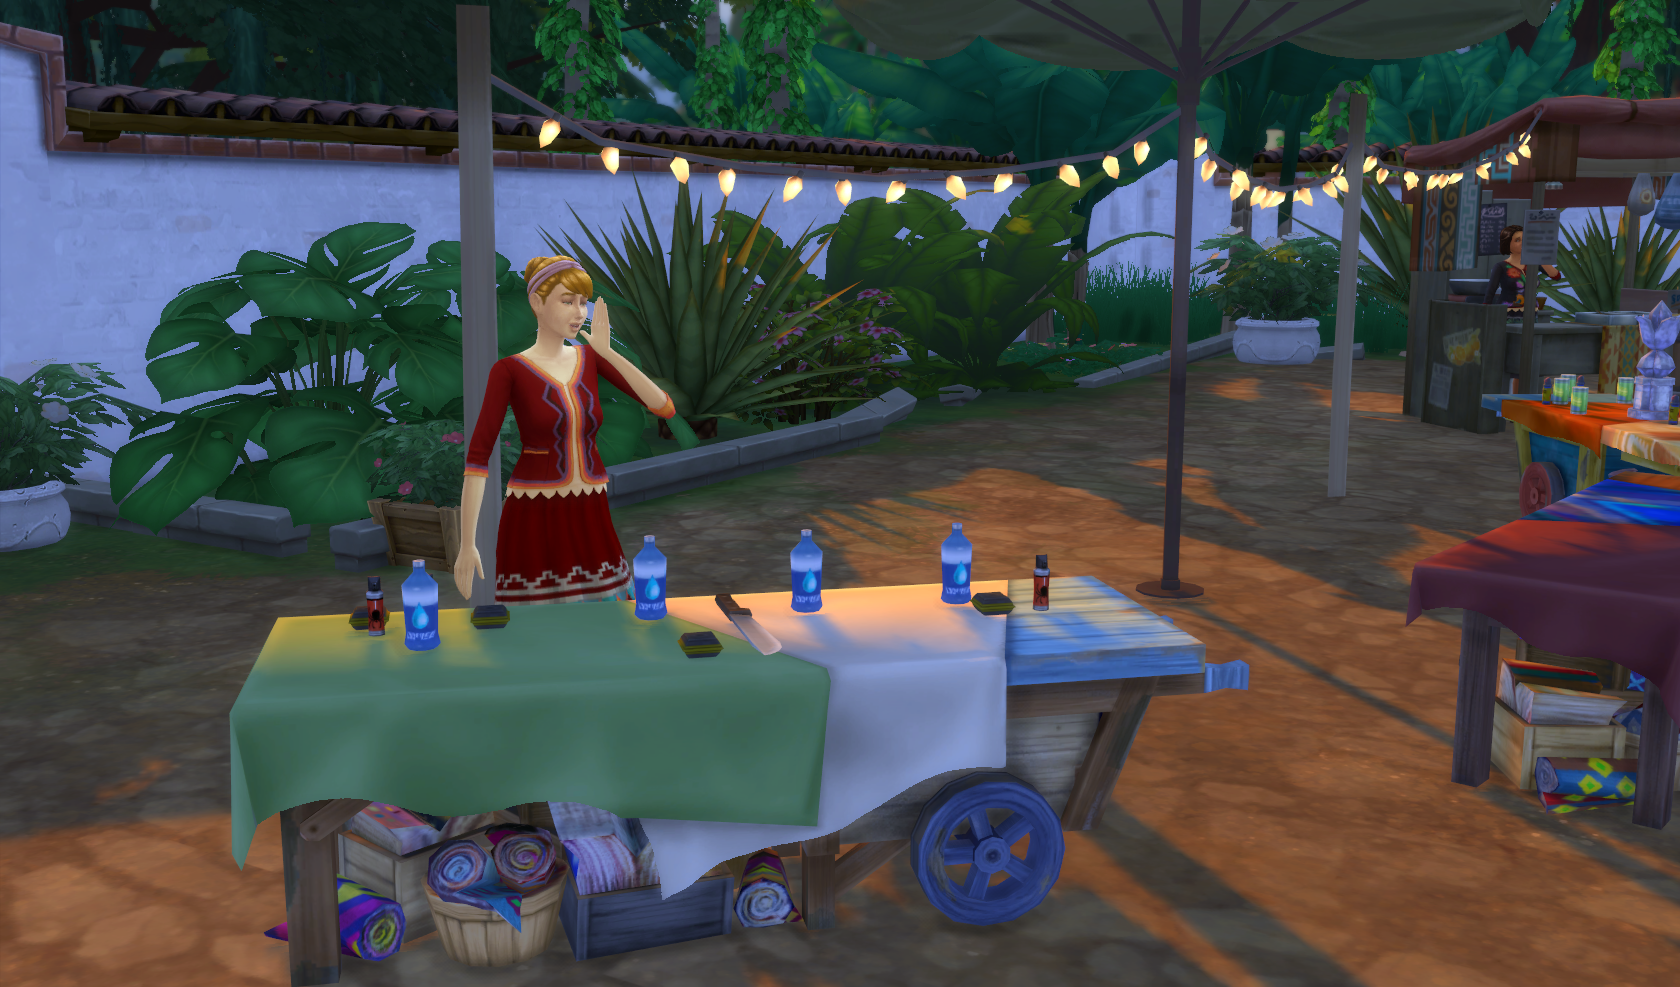 The Sims 4 Avventura nella Giungla